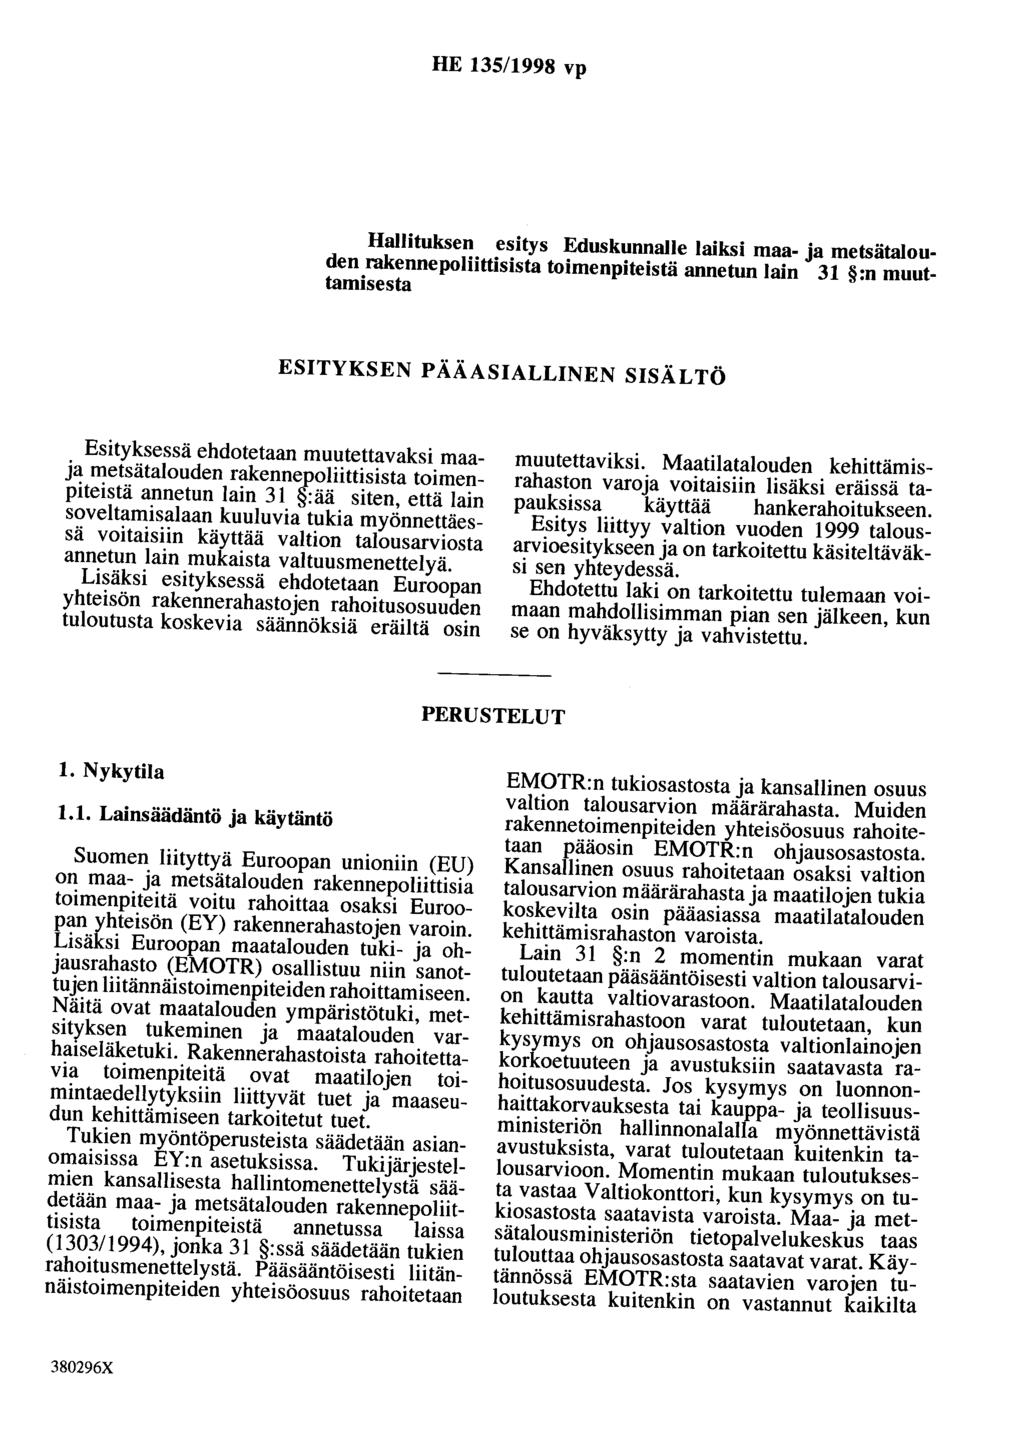 HE 135/1998 vp Hallituksen esitys Eduskunnalle laiksi maa- ja metsätalouden rakennepoliittisista toimenpiteistä annetun lain 31 :n muuttamisesta ESITYKSEN PÄÄASIALLINEN SISÄLTÖ Esityksessä ehdotetaan